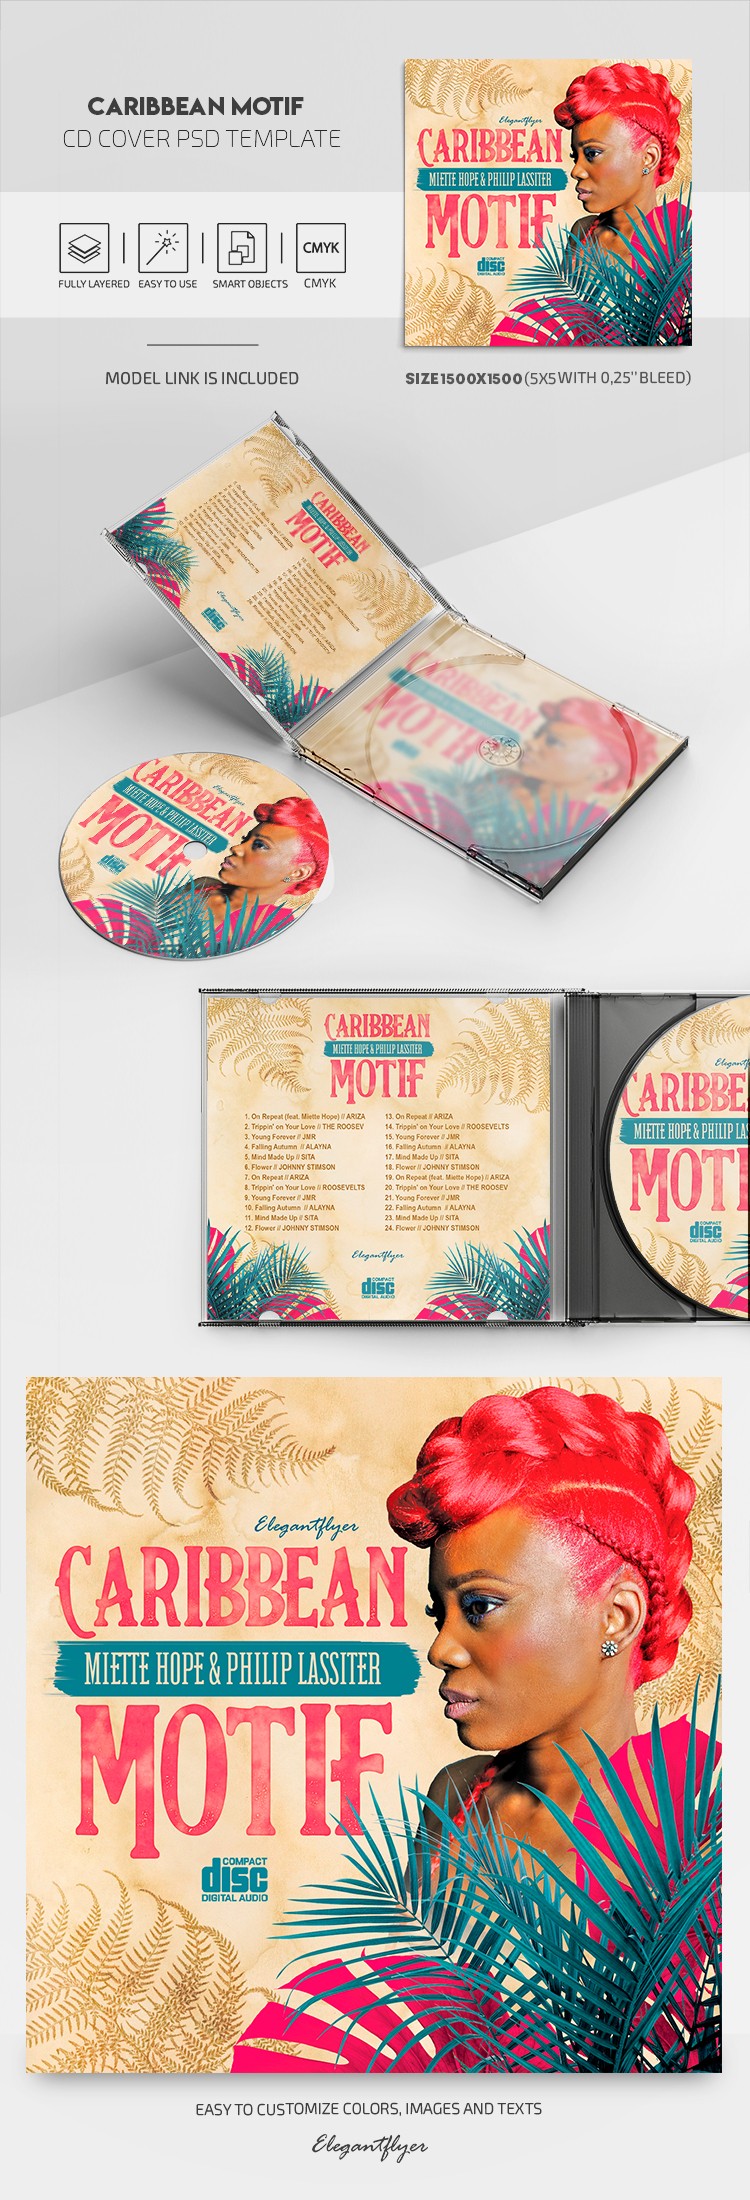 加勒比主题 CD 封面 by ElegantFlyer